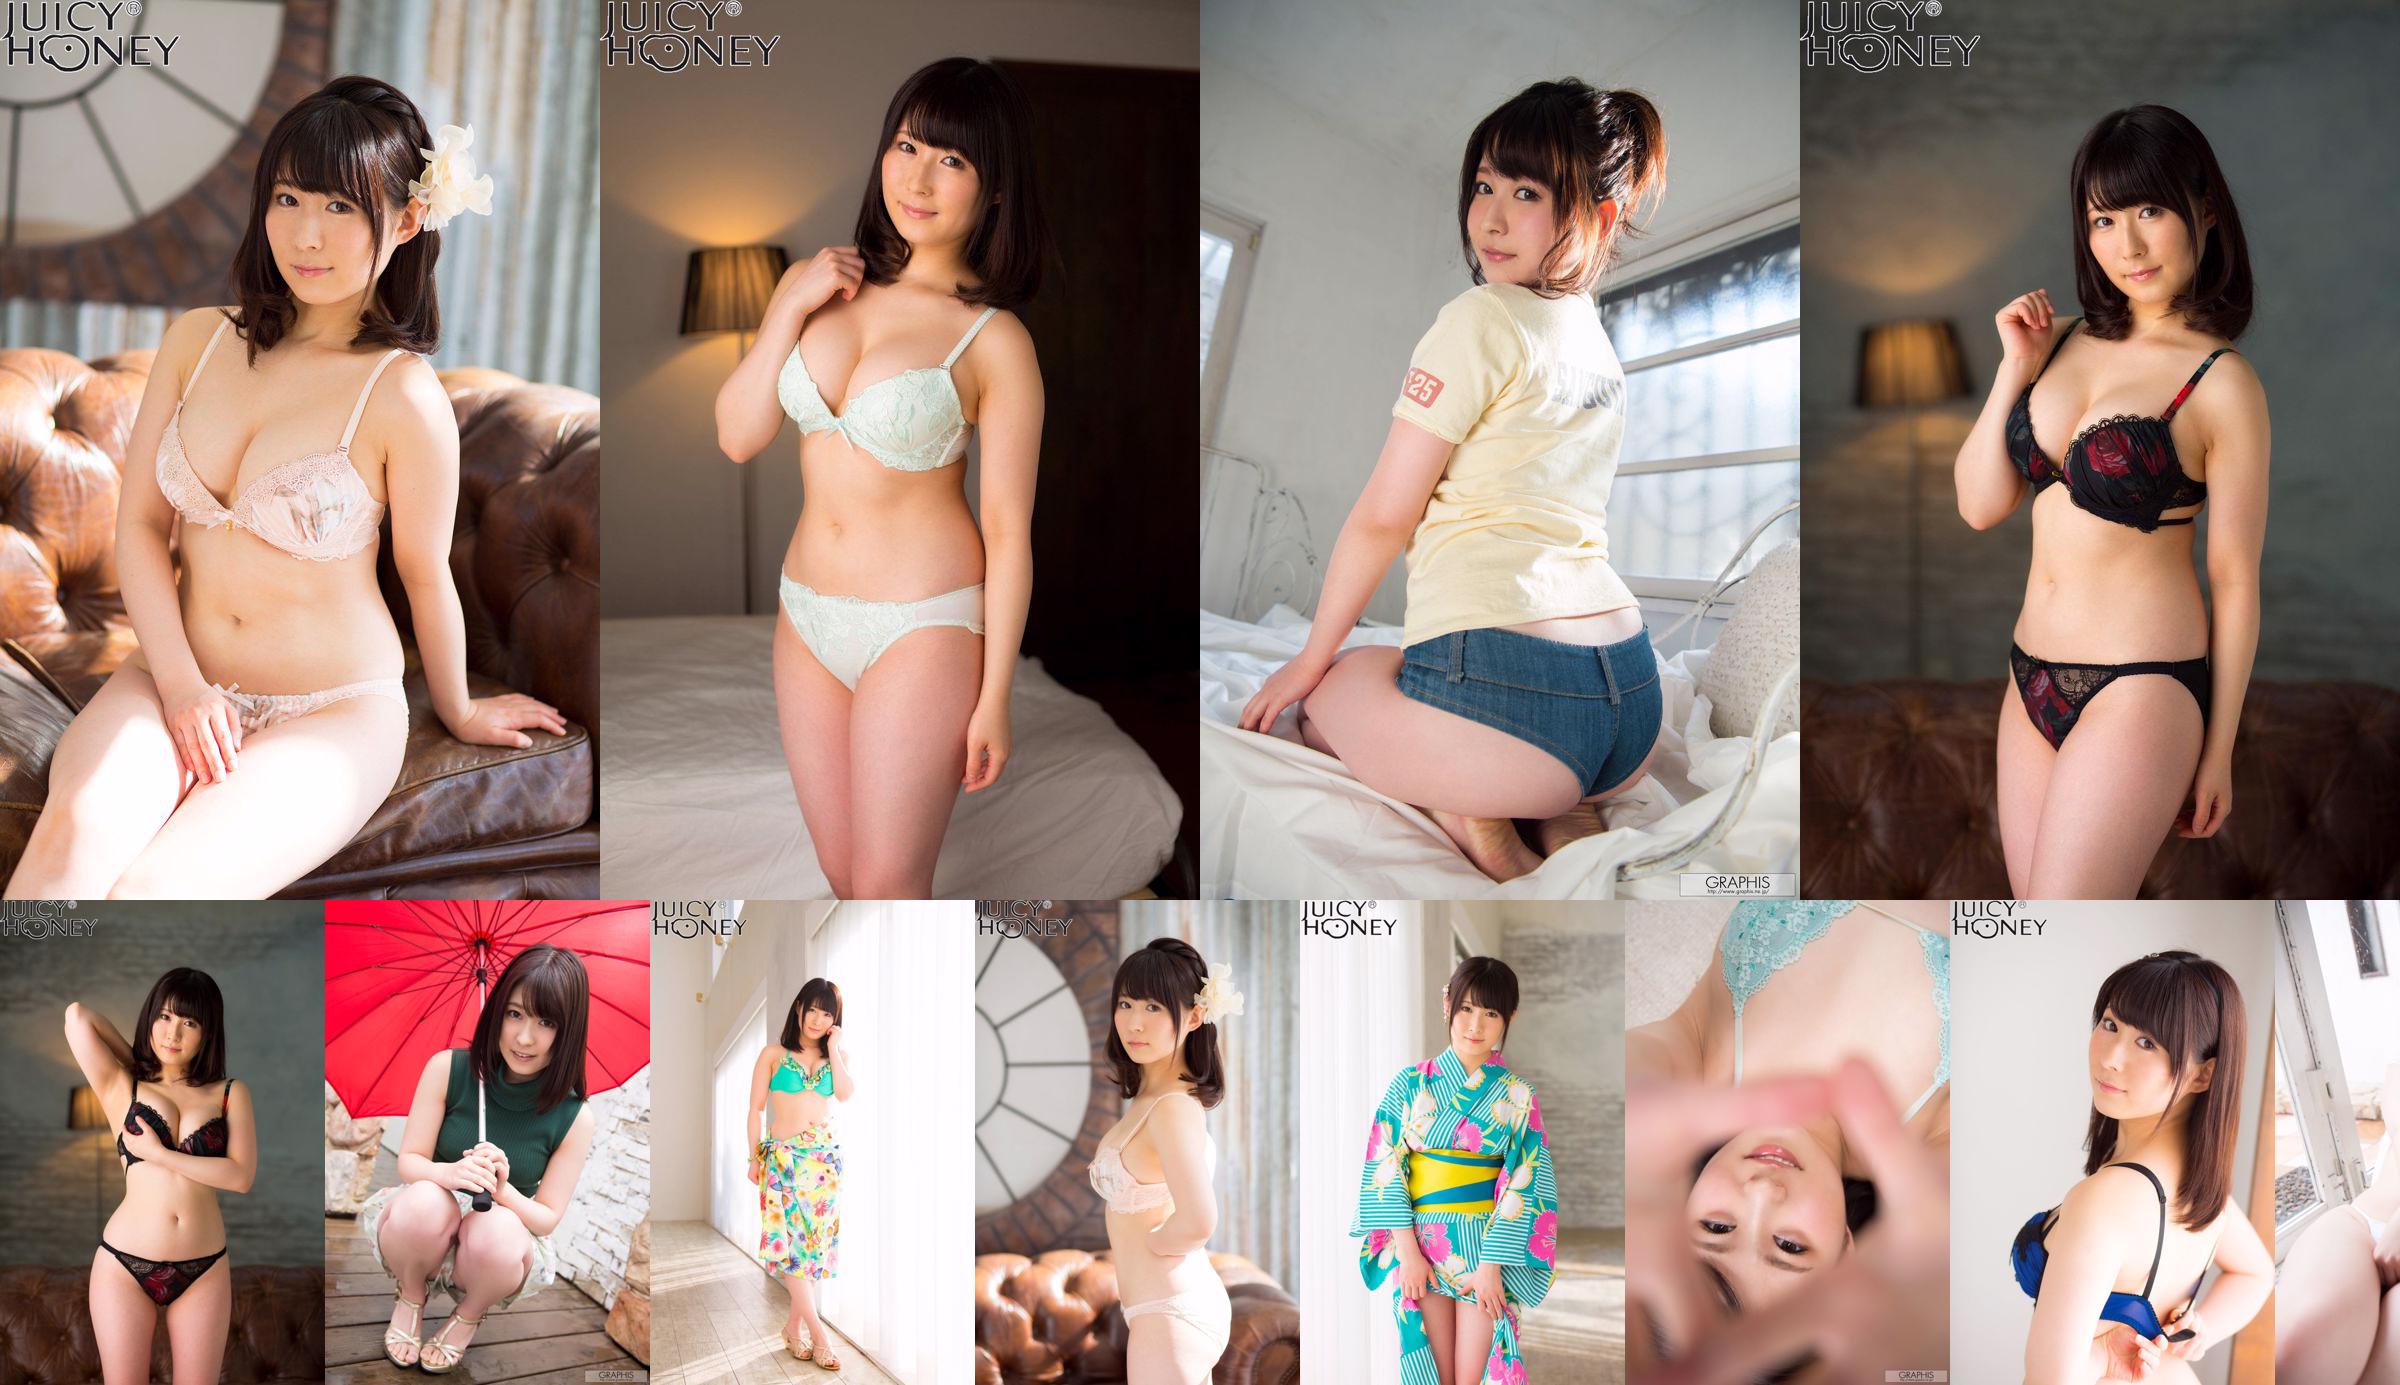 [X-City] Juicy Honey jh216 Asuka Rin Asuka No.5983bc Halaman 2